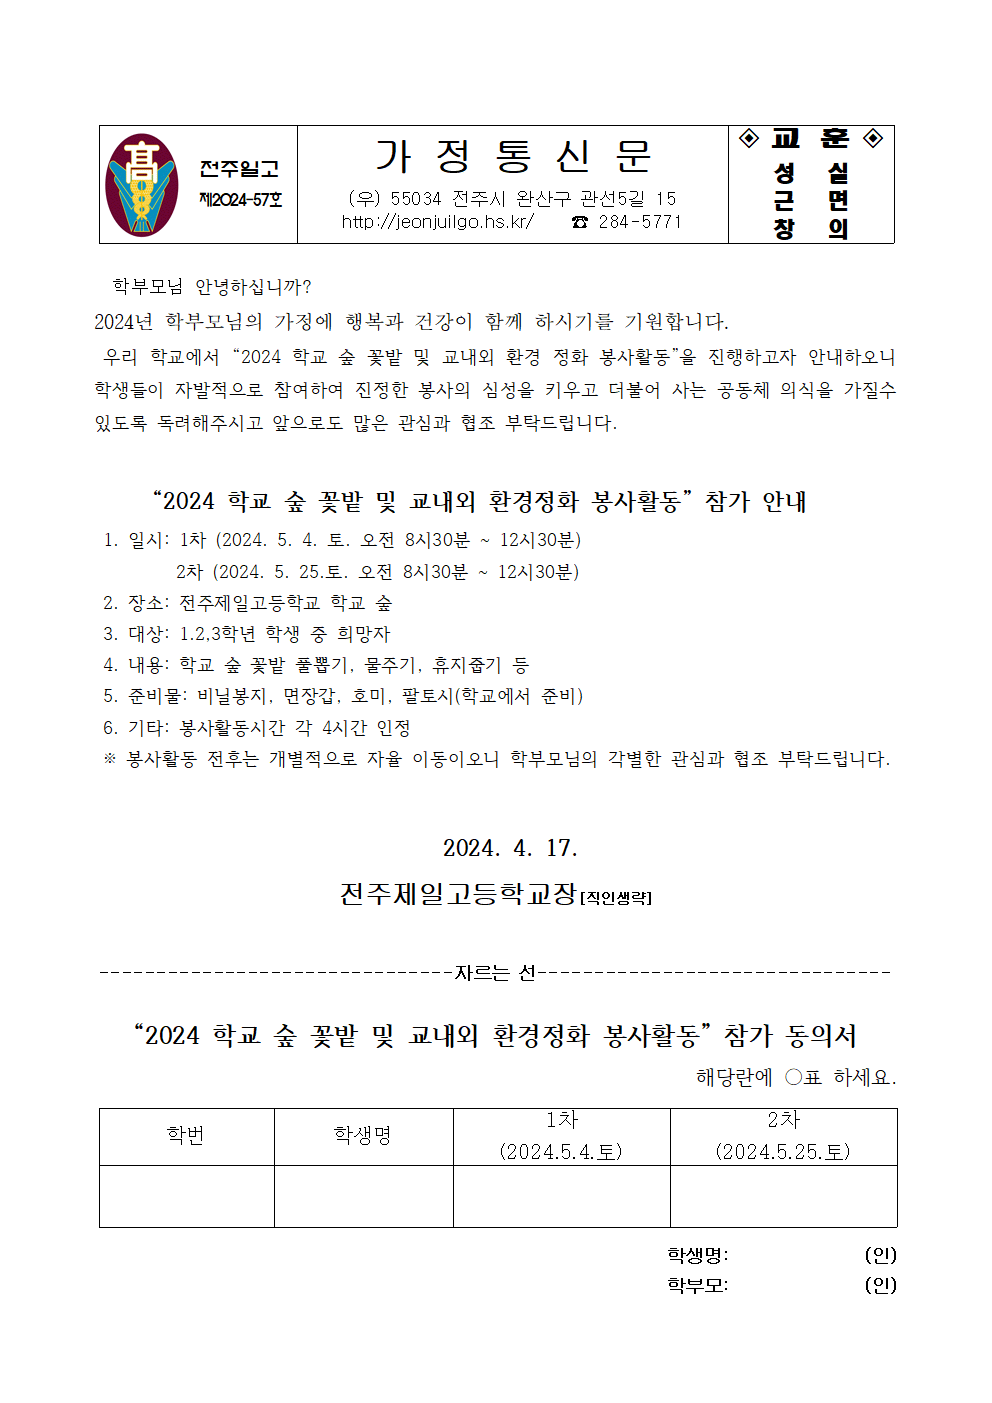 2024 학교 숲 정화 활동 가정통신문001